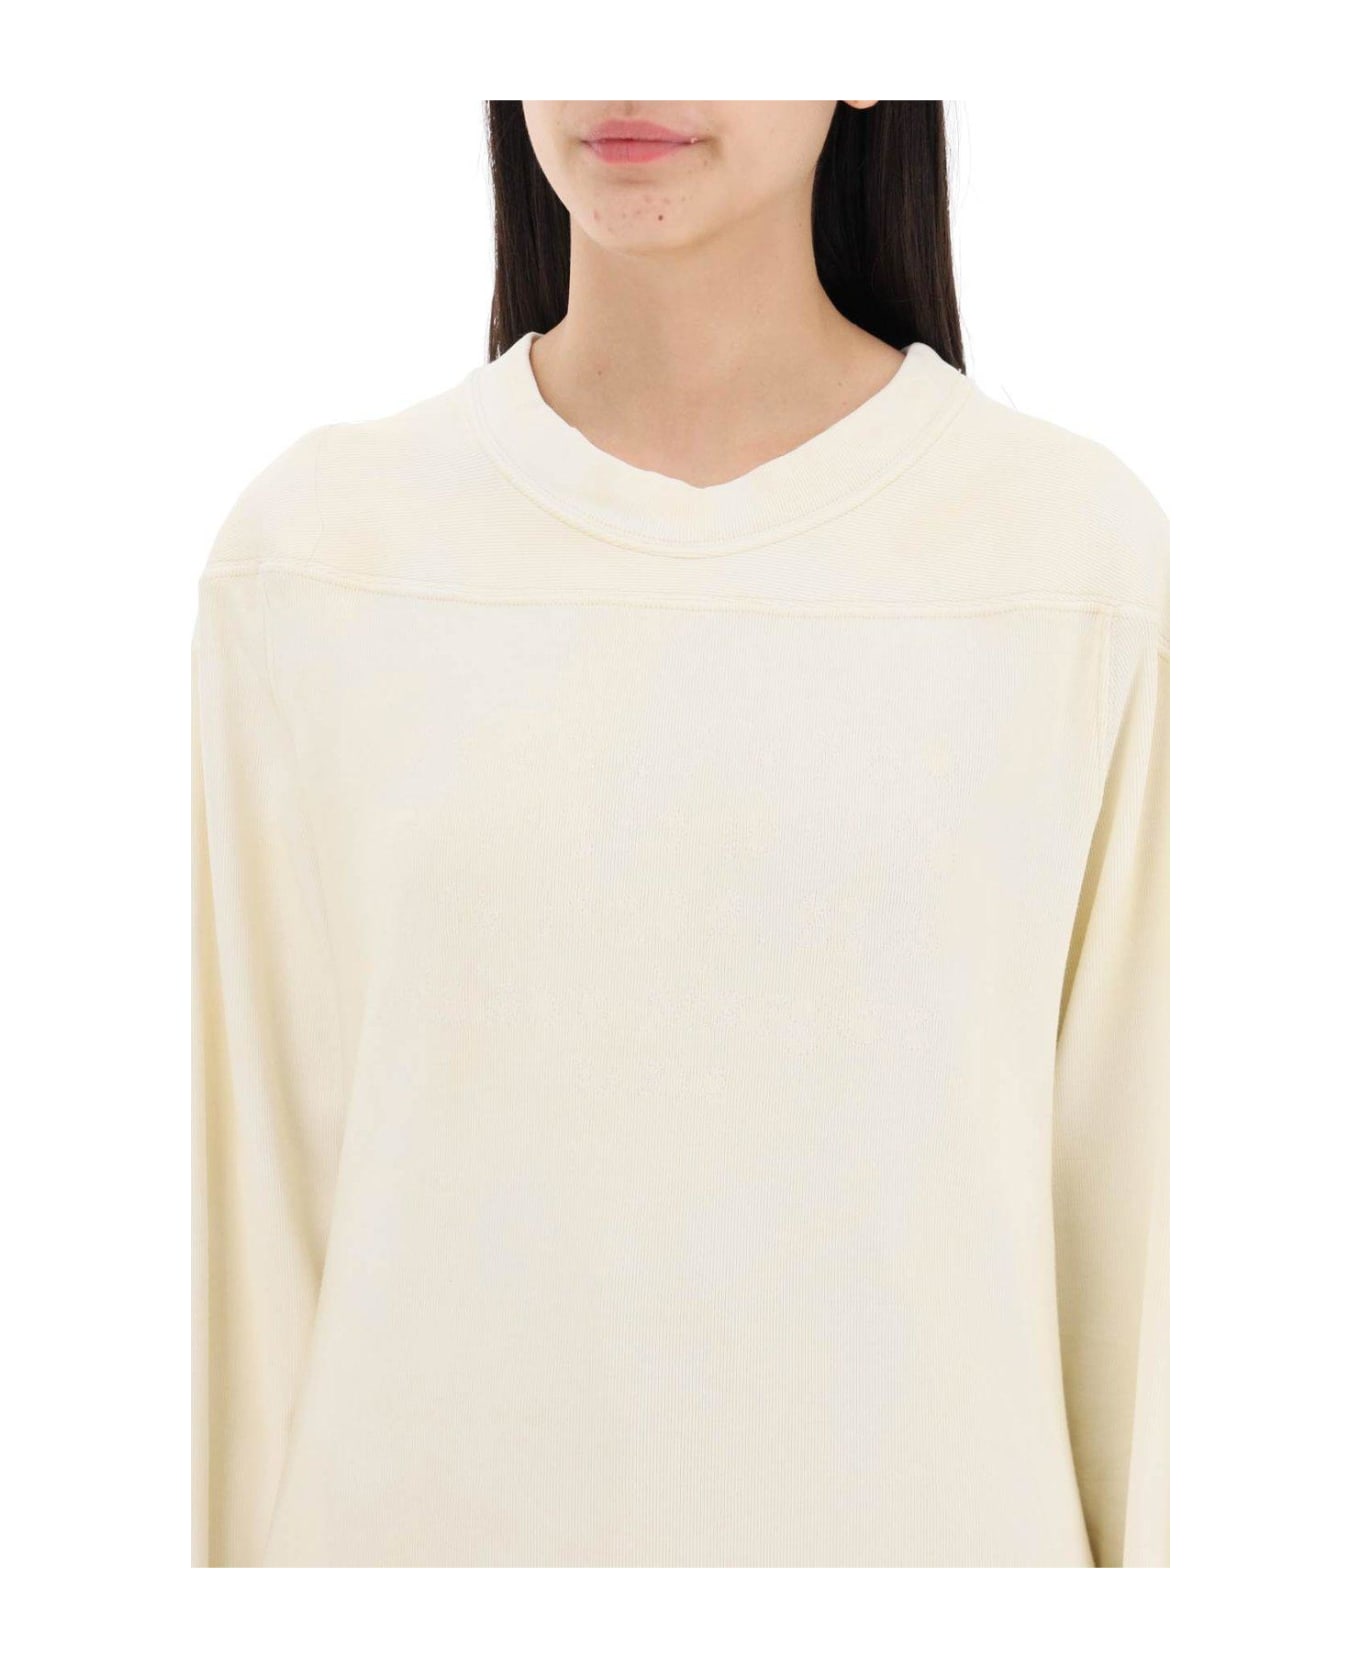 Maison Margiela Long-sleeved Crewneck Sweatshirt - White